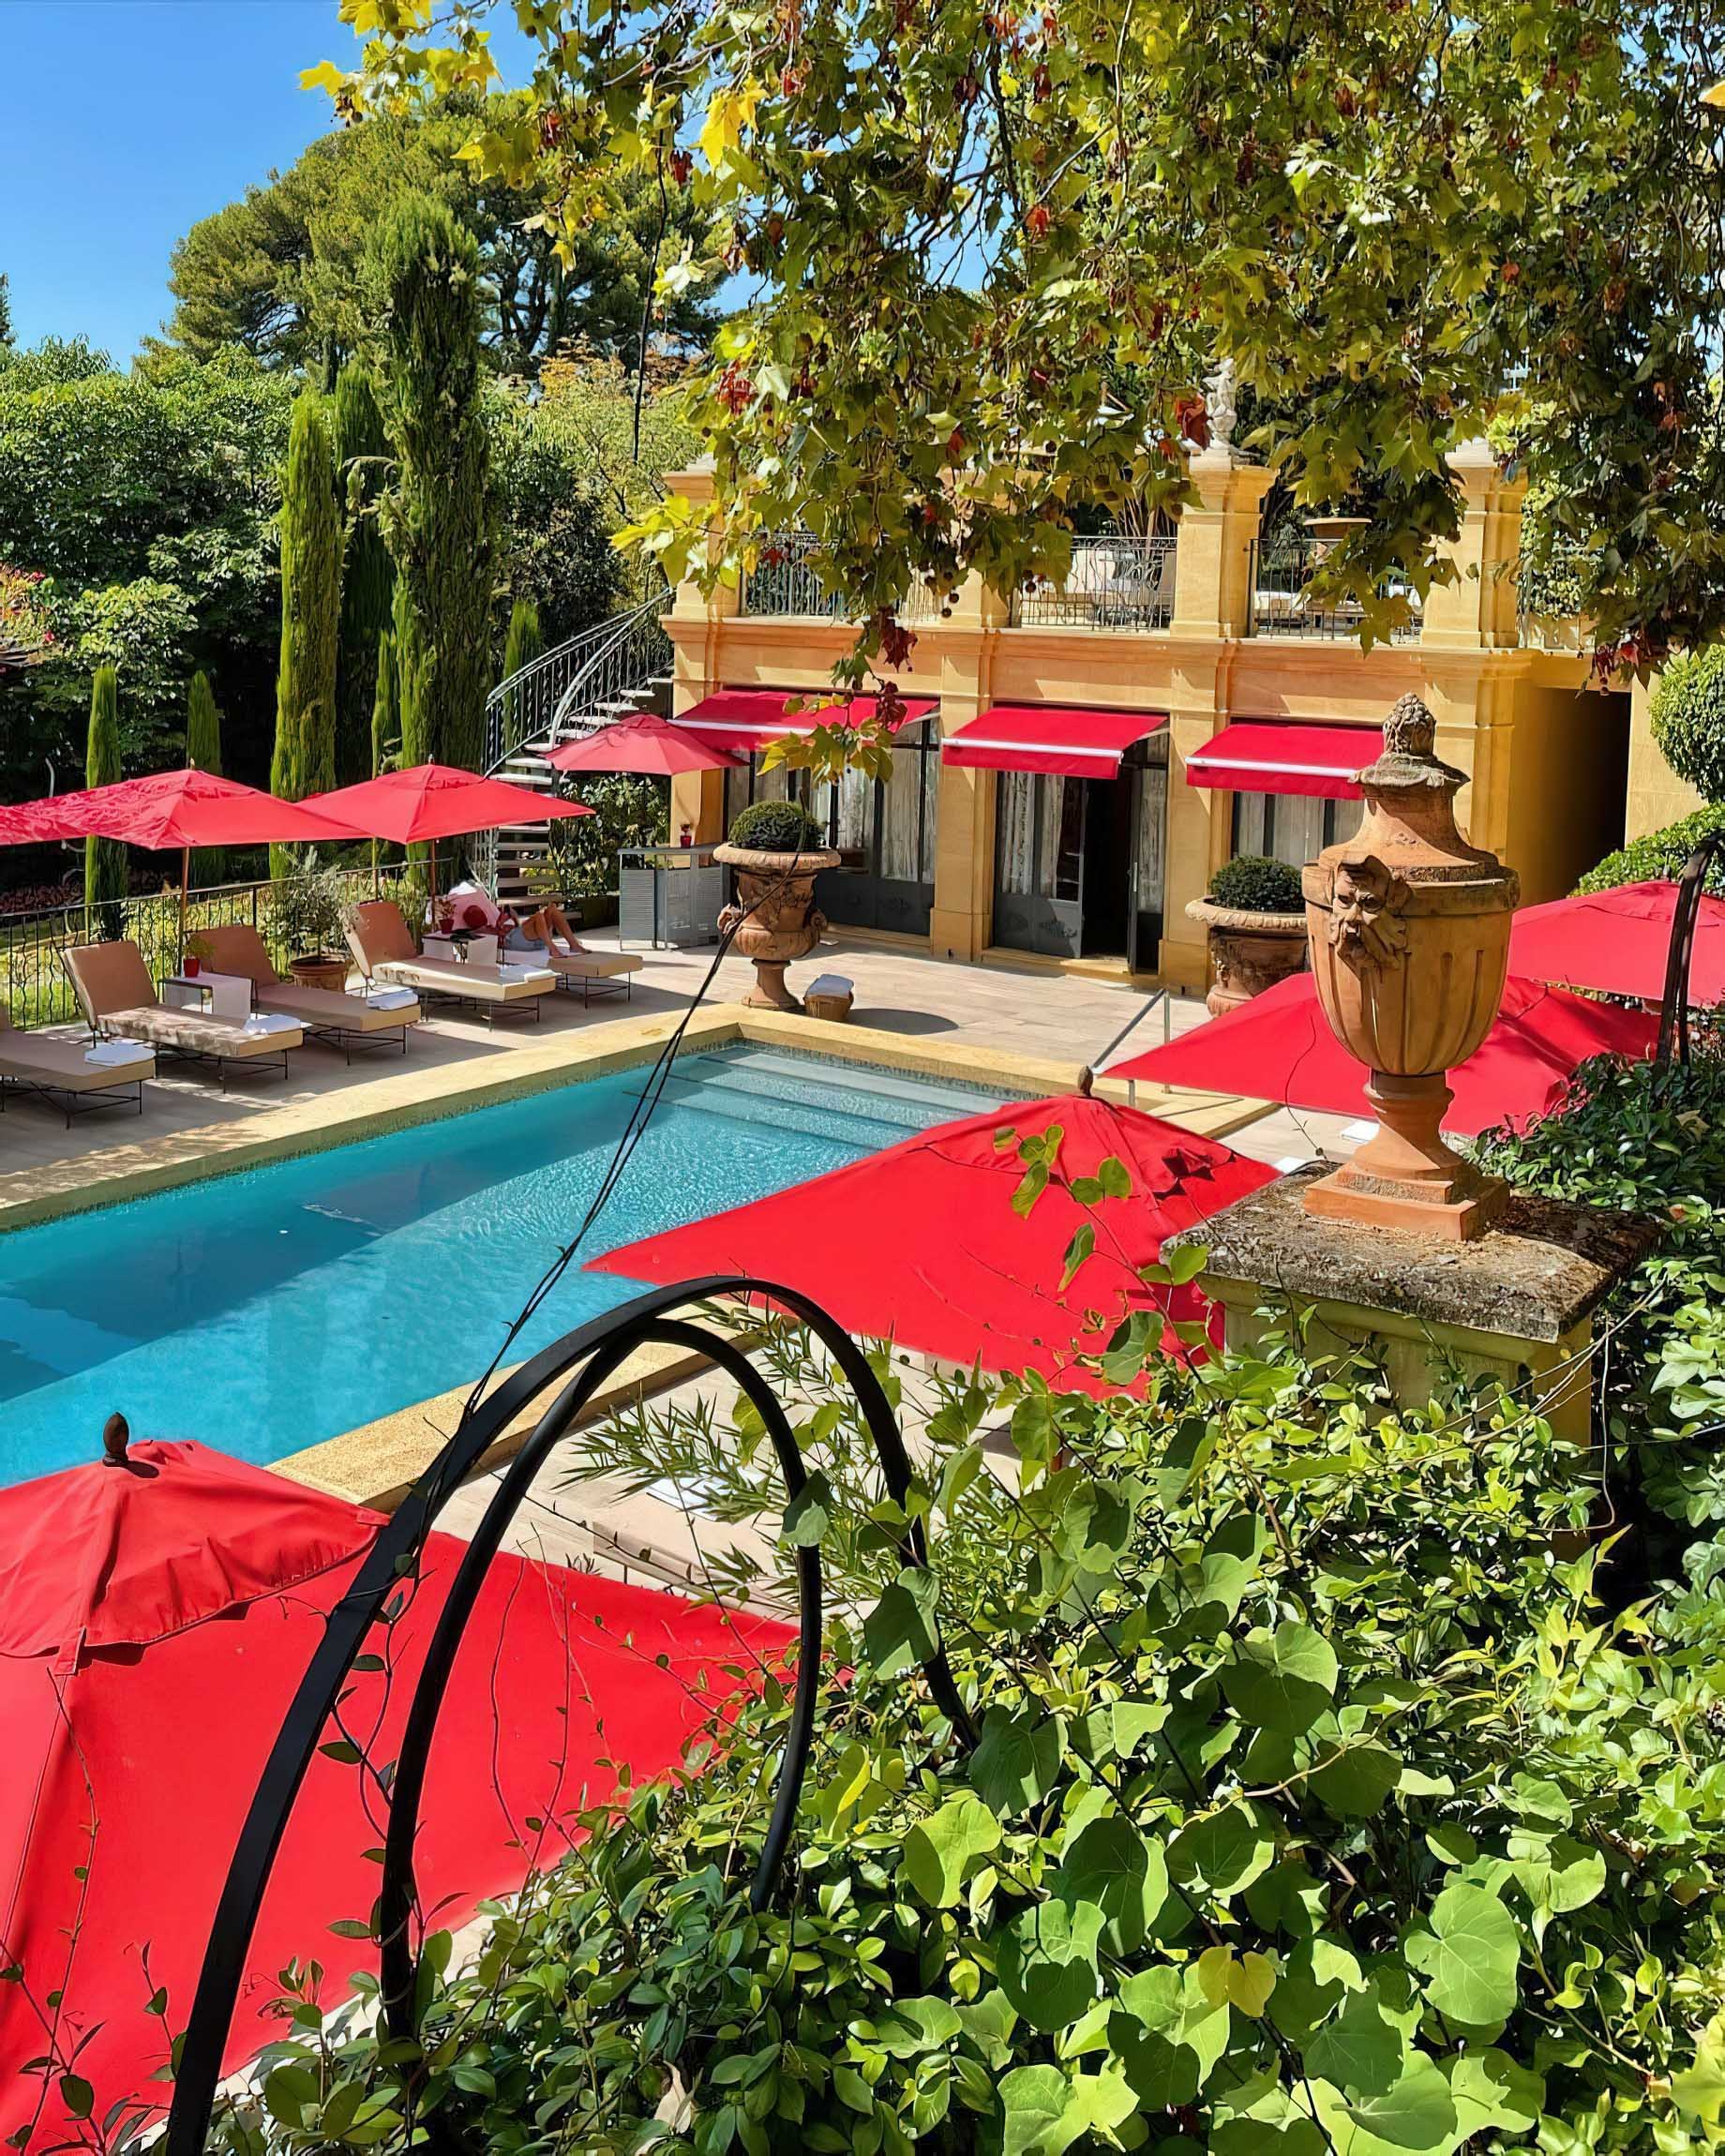 Villa Gallici Relais Châteaux Hotel – Aix-en-Provence, France – Pool Deck